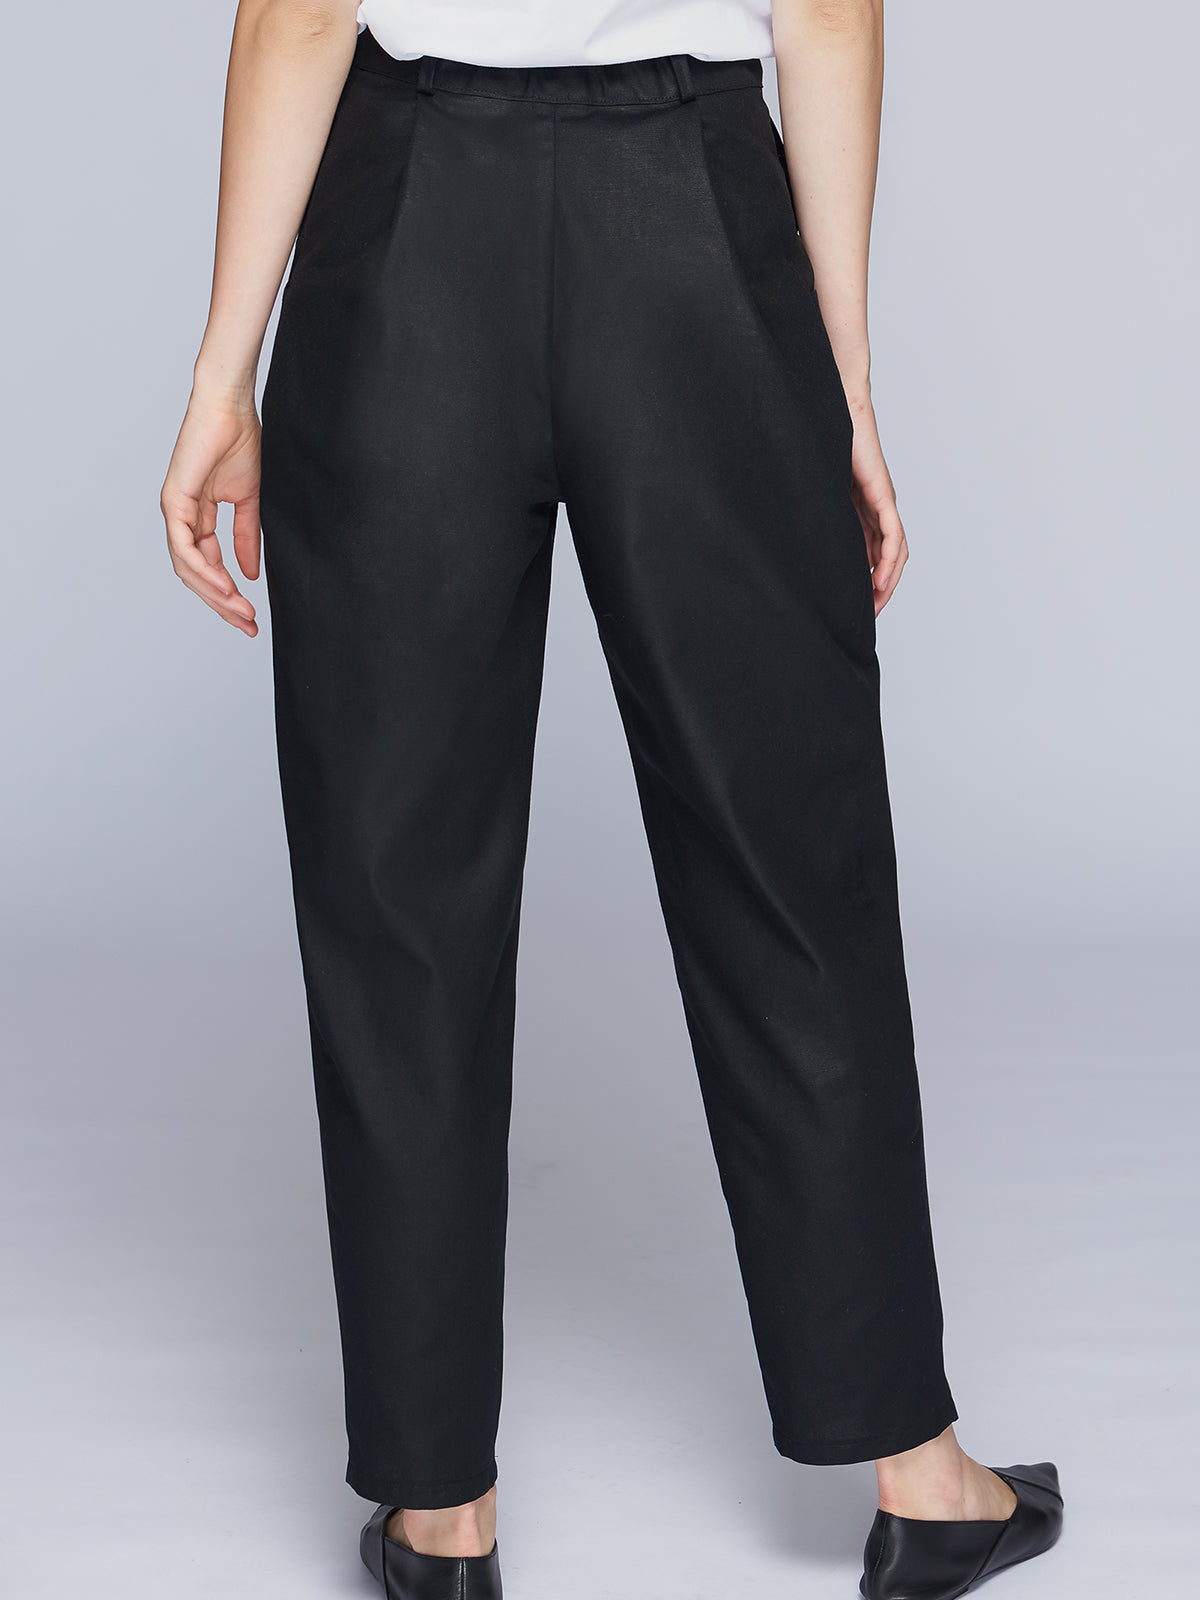 Black cotton slouchy women's pants